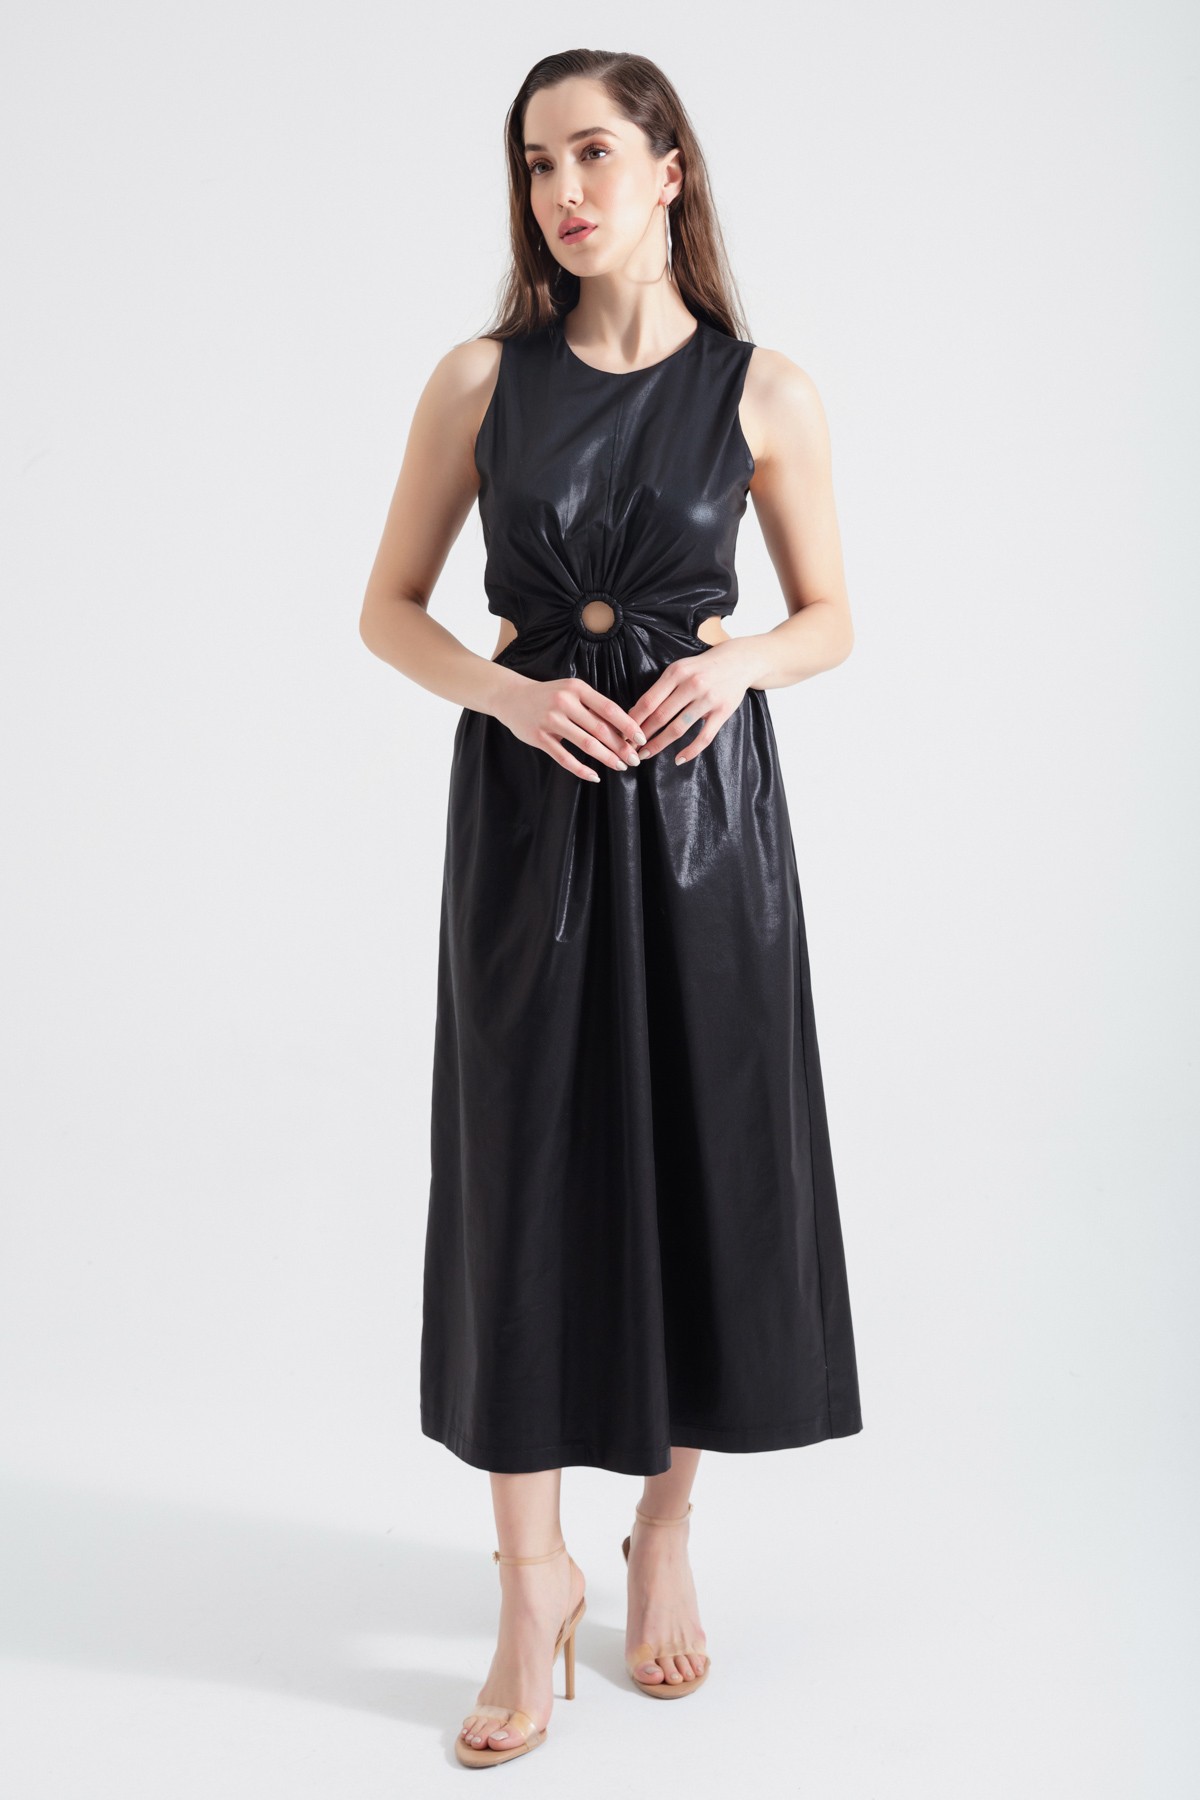 Kadın Bel Dekolteli Parlak Kumaş Dokulu Midi Elbise - Siyah